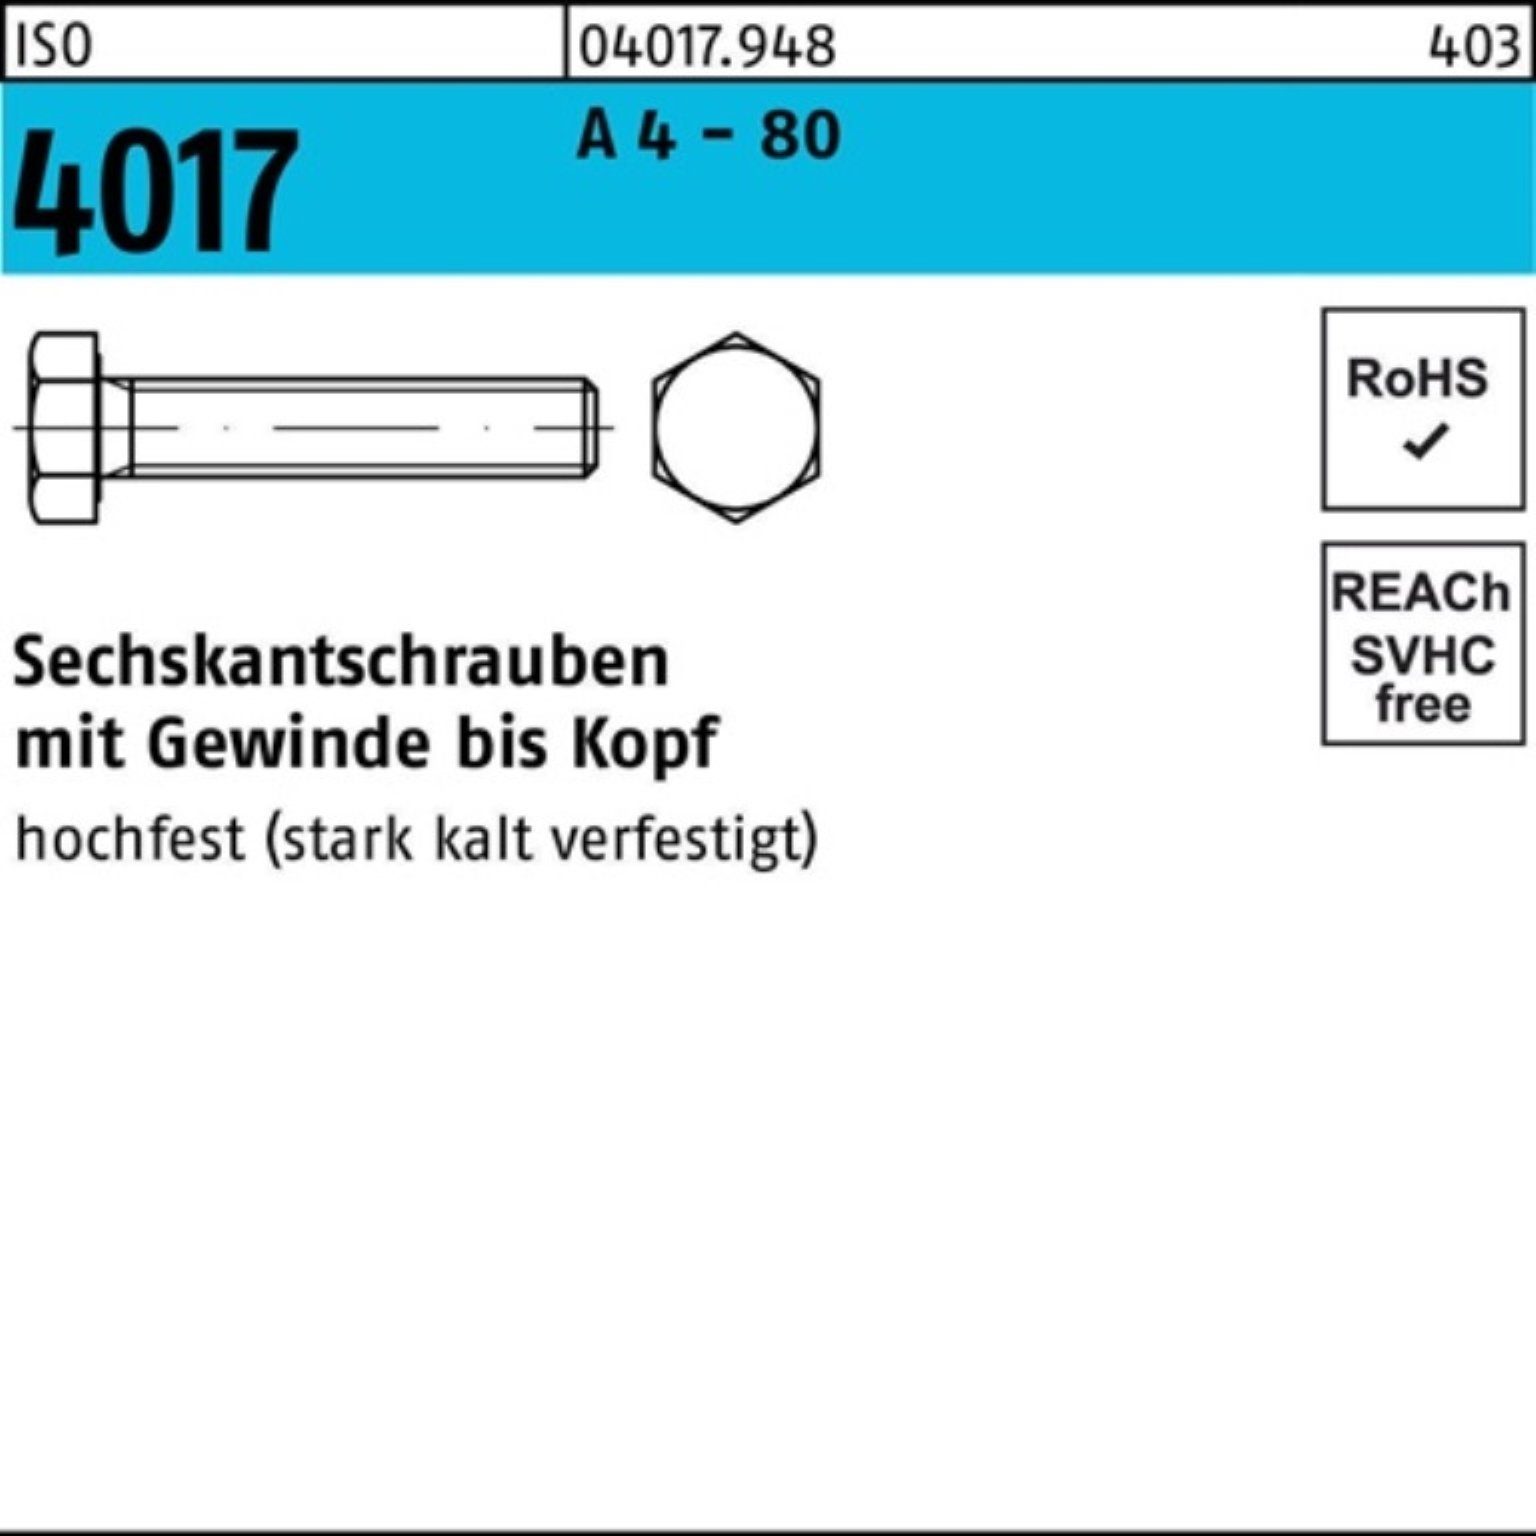 Bufab Sechskantschraube 4017 VG - 50 80 45 100er Pack M12x 4 Stück Sechskantschraube ISO IS A